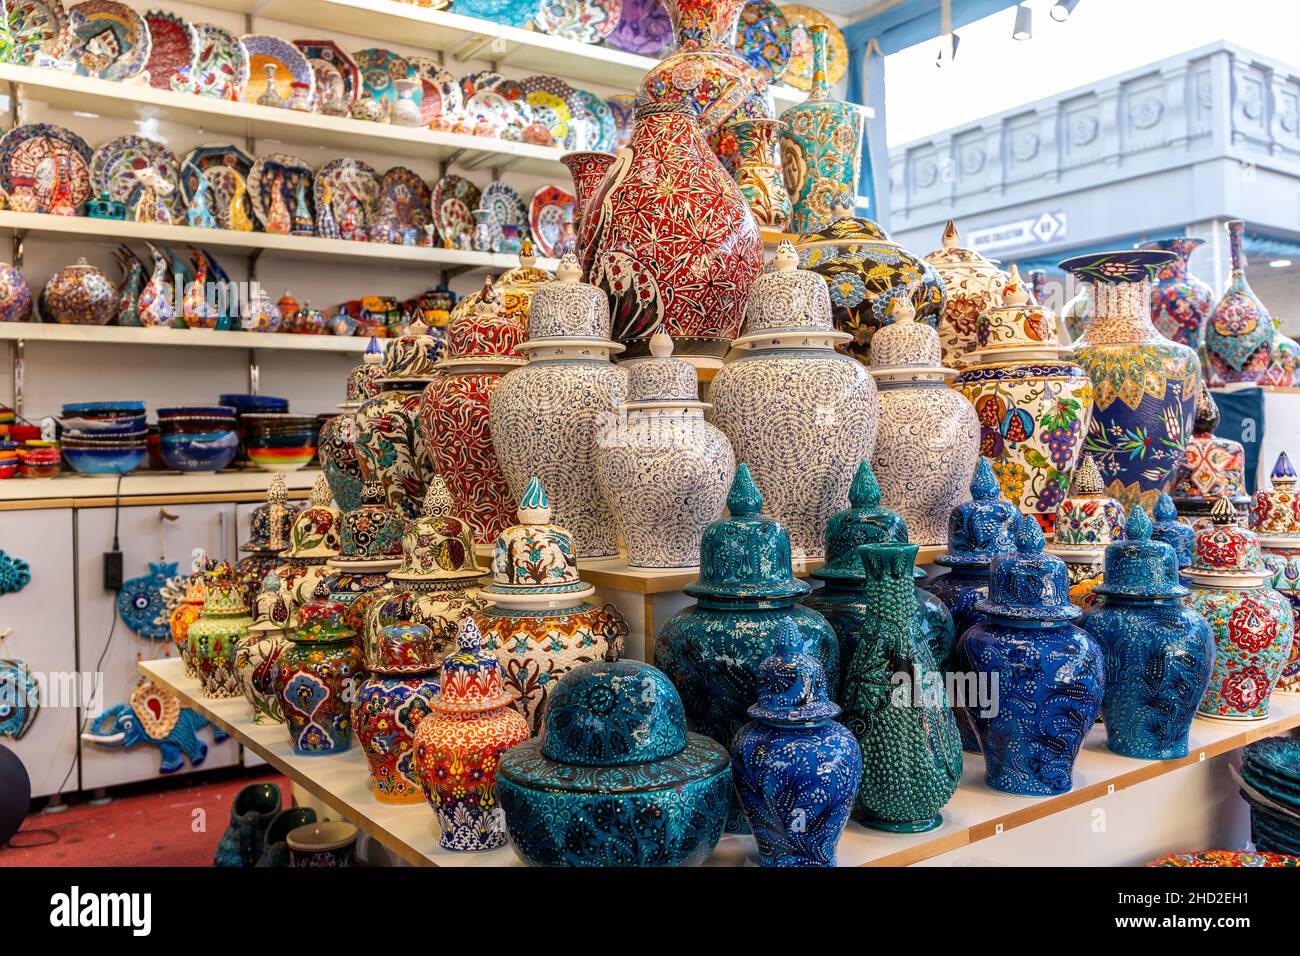 Ceramiche colorate turche dipinte a mano, vasi, vasi, pentole e piatti esposti in un negozio turco a Global Village, Dubai, United Arab Emiartes. Foto Stock